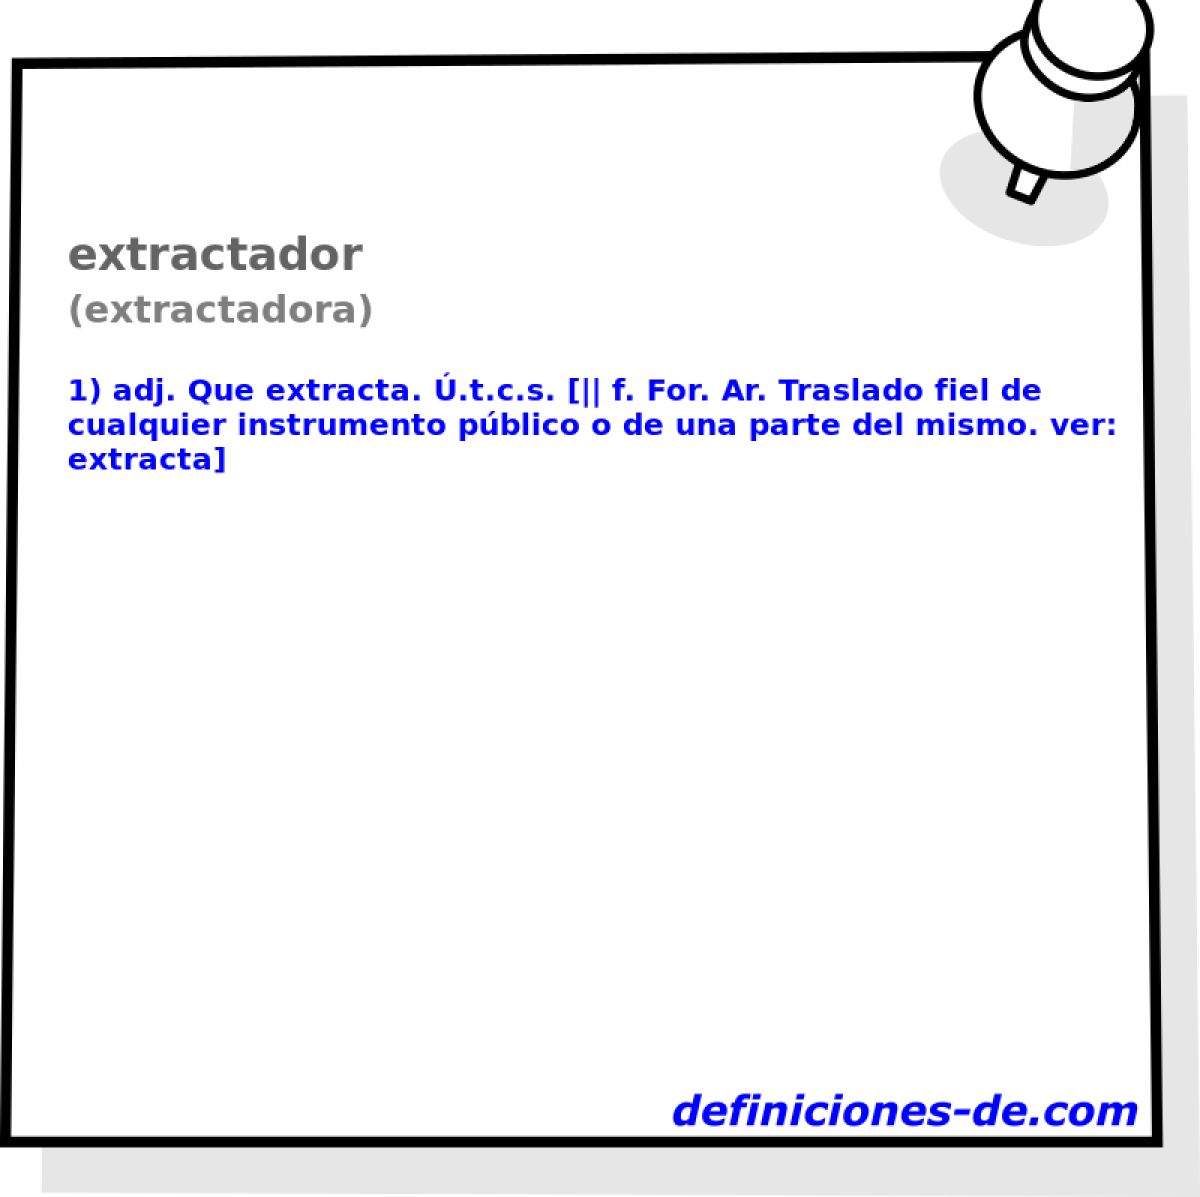 extractador (extractadora)